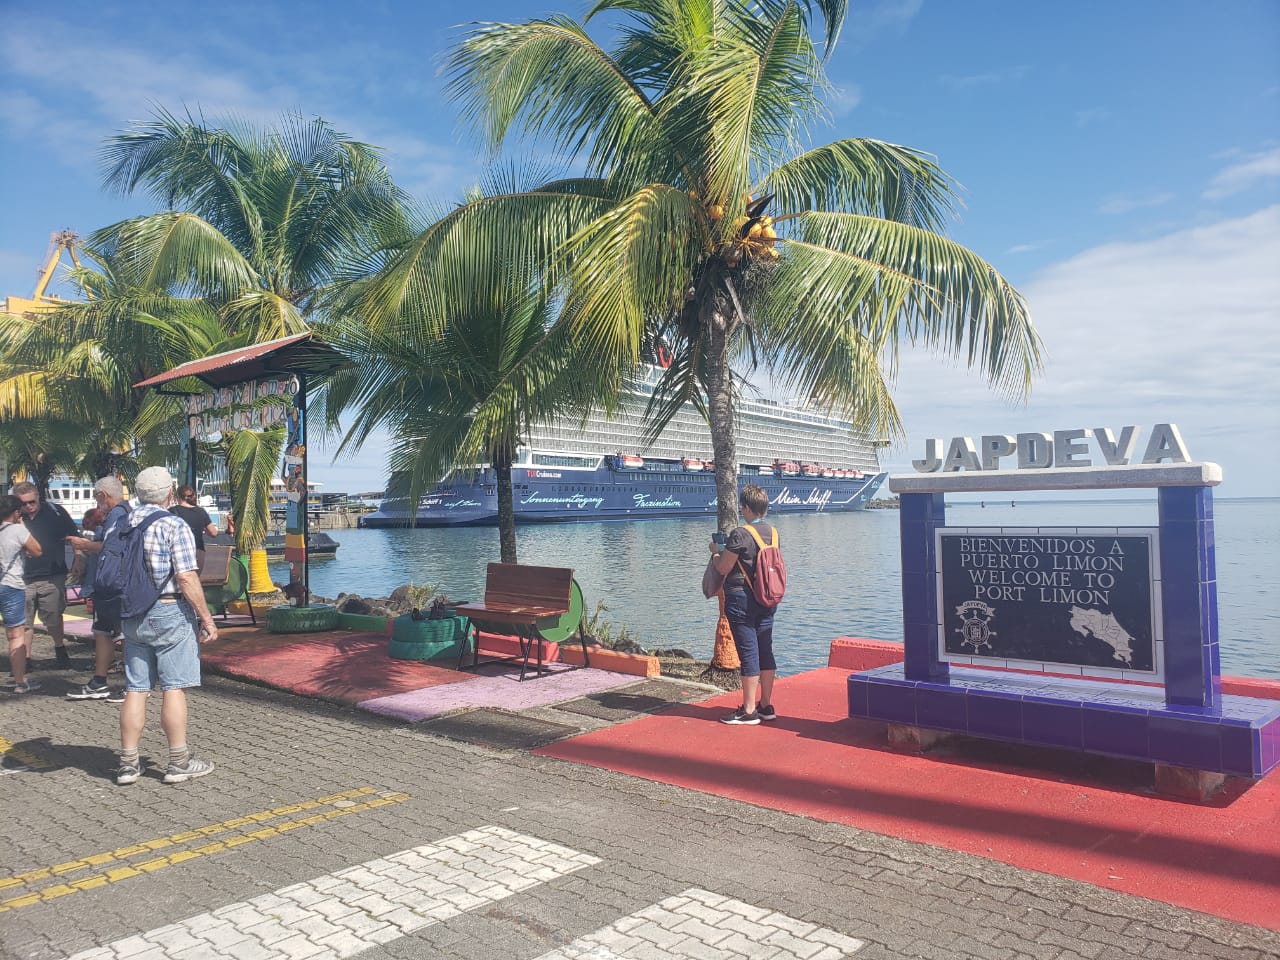 Empresarios objetan cartel de licitación promovido por Japdeva para terminal de cruceros en Moín